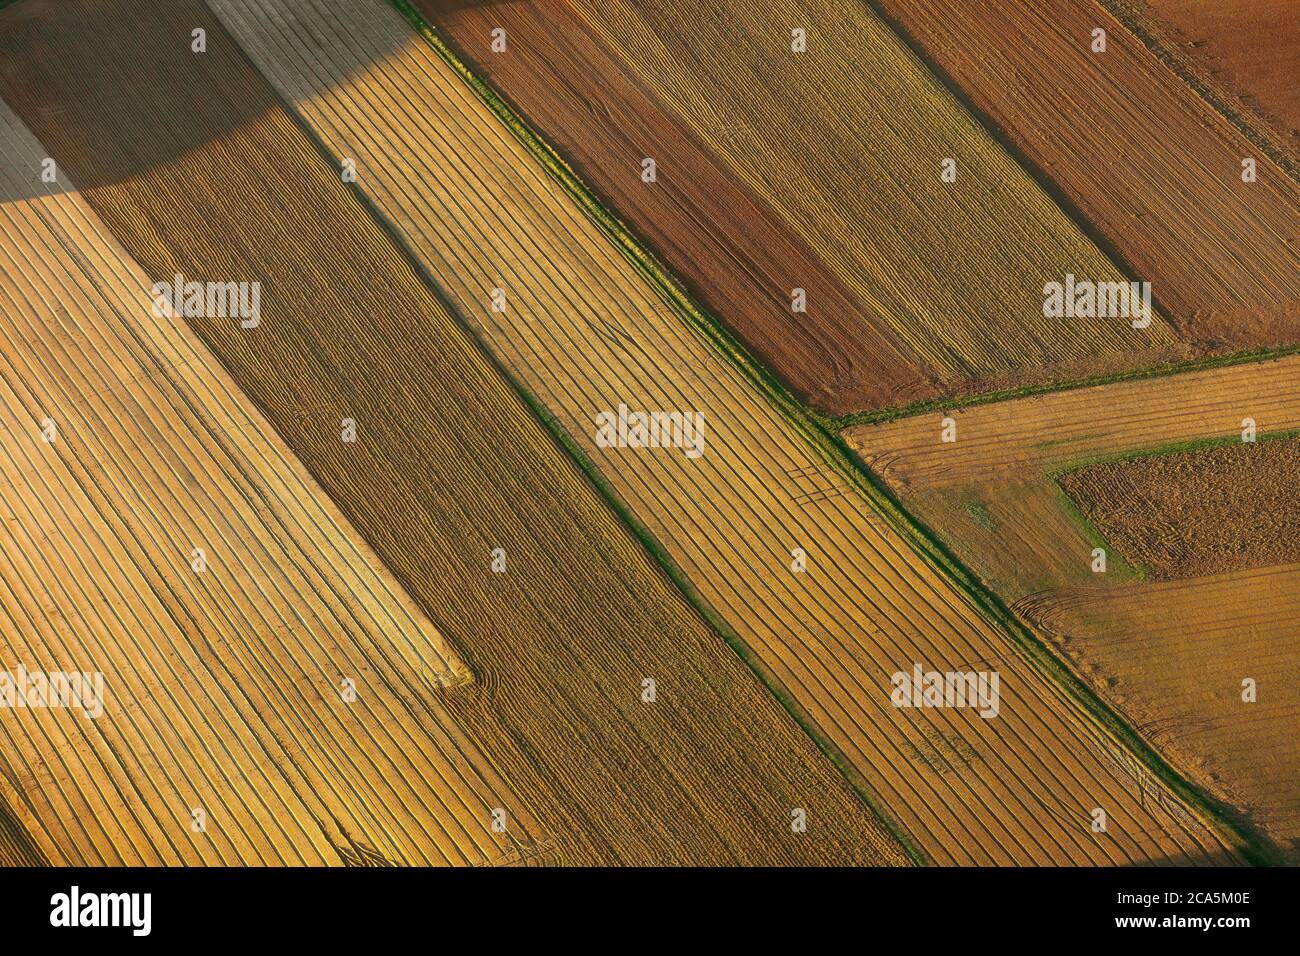 Francia, Yvelines, Les Mureaux, vista aerea al tramonto della città, vista aerea di una zona agricola (vista aerea) Foto Stock